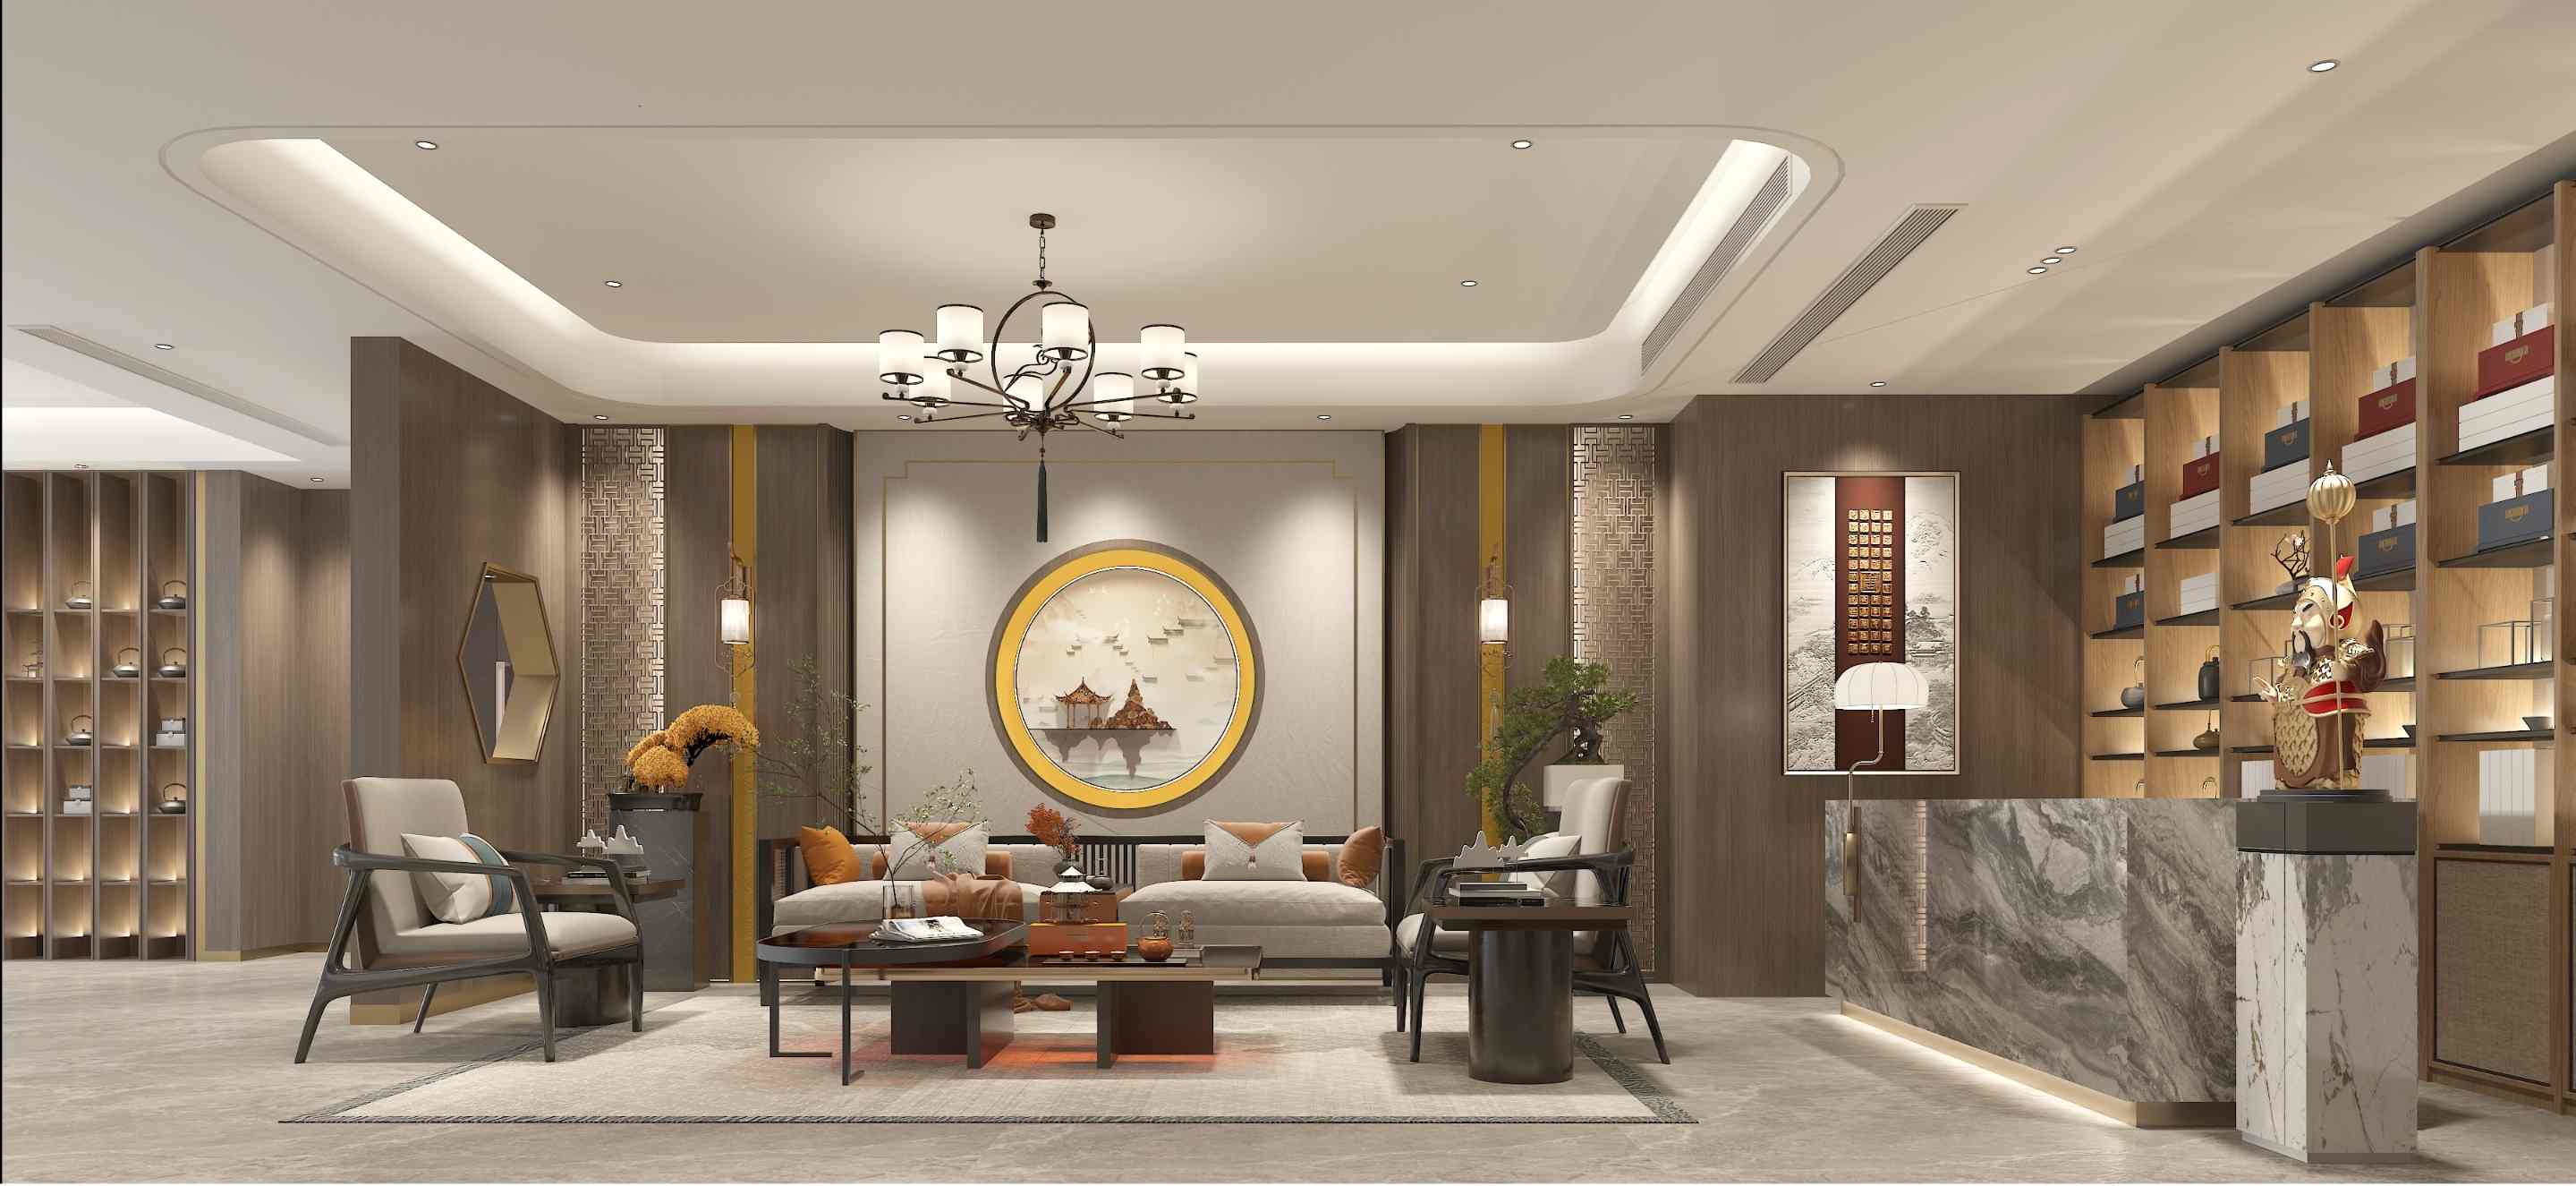 【图】 深圳酒店设计公司_商务酒店设计_主题酒店设计公司